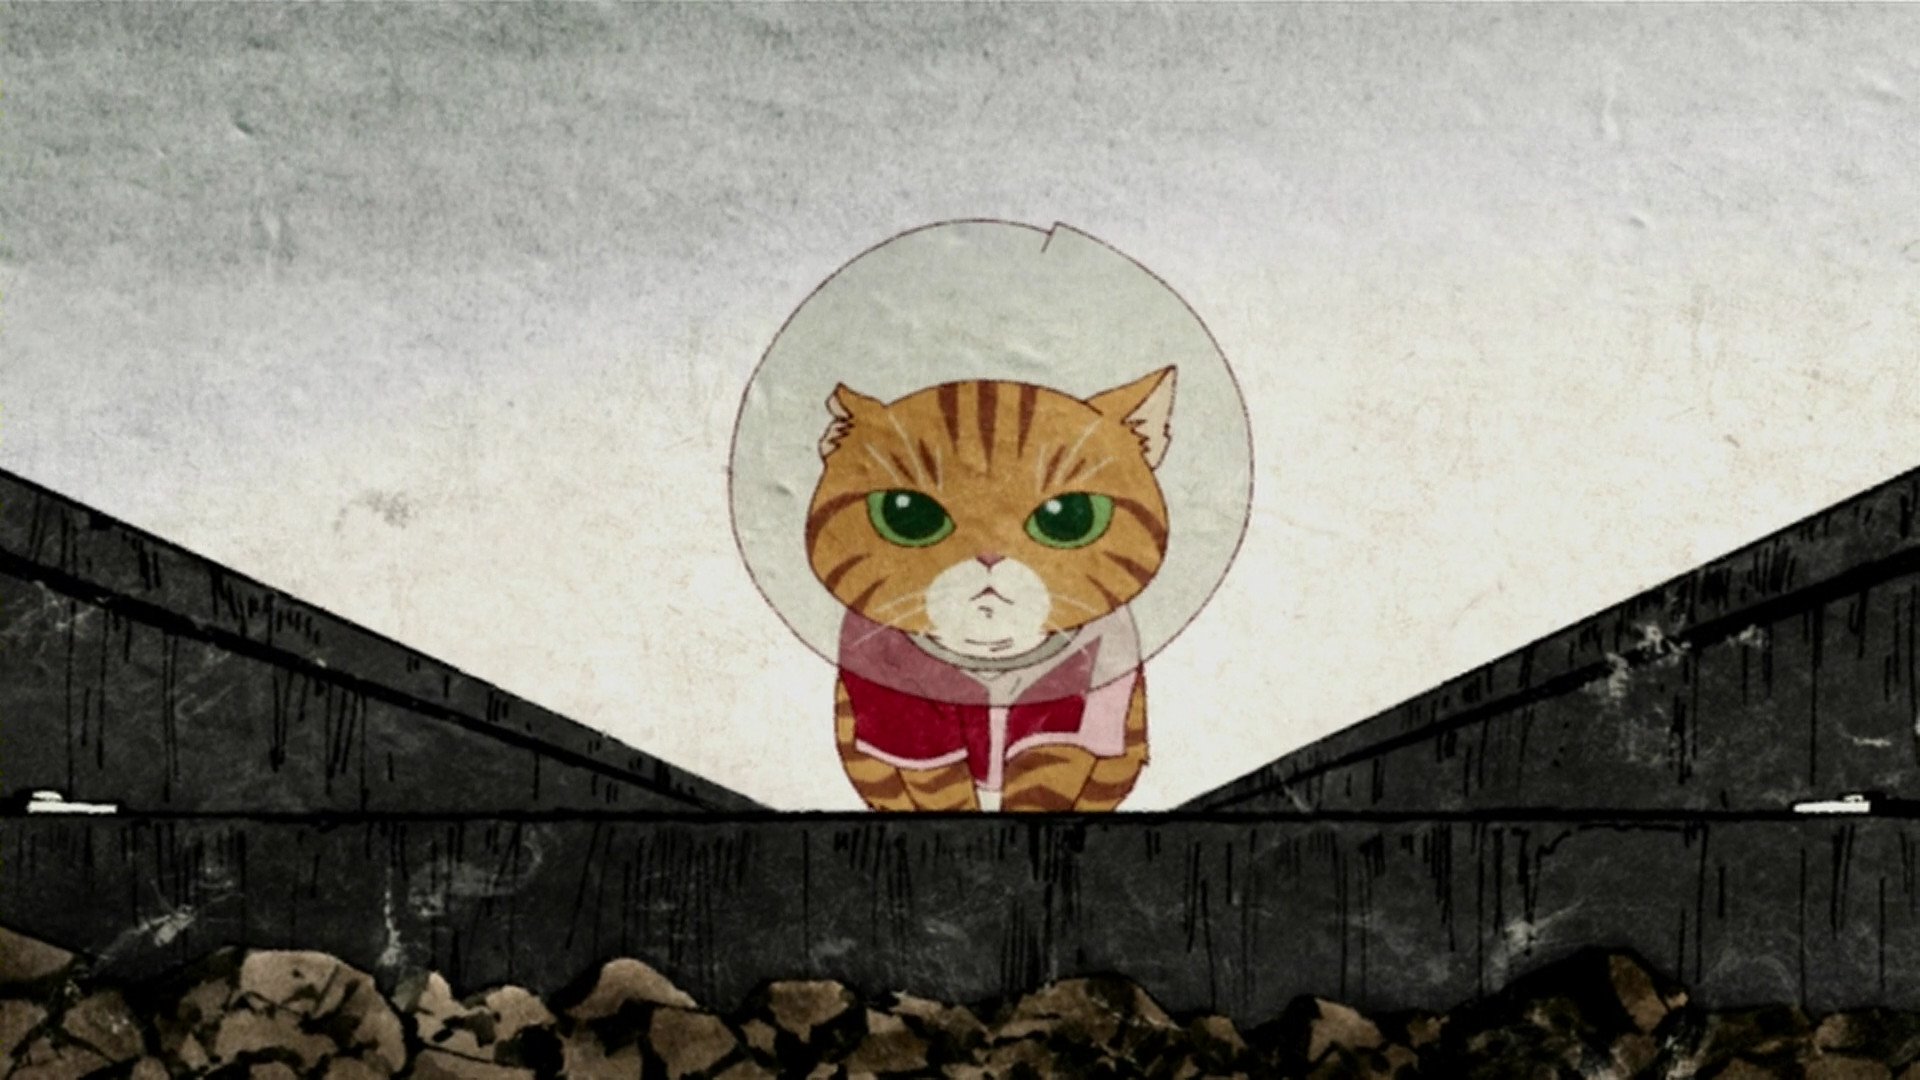 年末のプロモーション モノノ怪 漫画 化猫 怪 座敷童子 海坊主 鵺 Ayakashi その他 8technologies Net